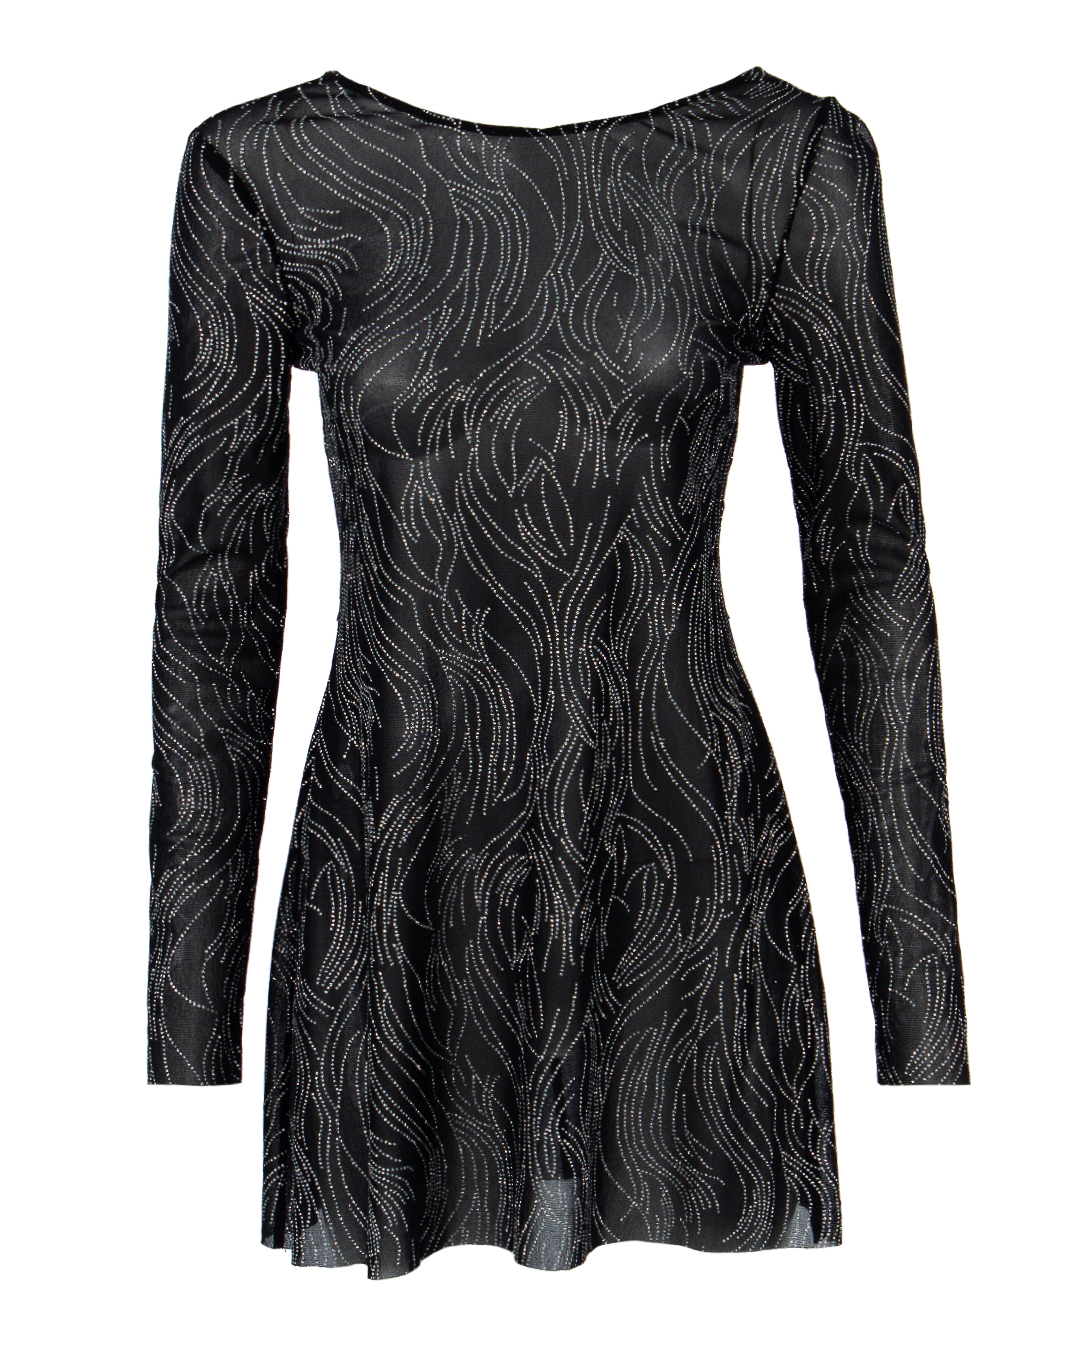 платье мини NINEMINUTES THEMEGARAMESHLAMINATA черный+серебряный 40, размер 40, цвет черный+серебряный THEMEGARAMESHLAMINATA черный+серебряный 40 - фото 1